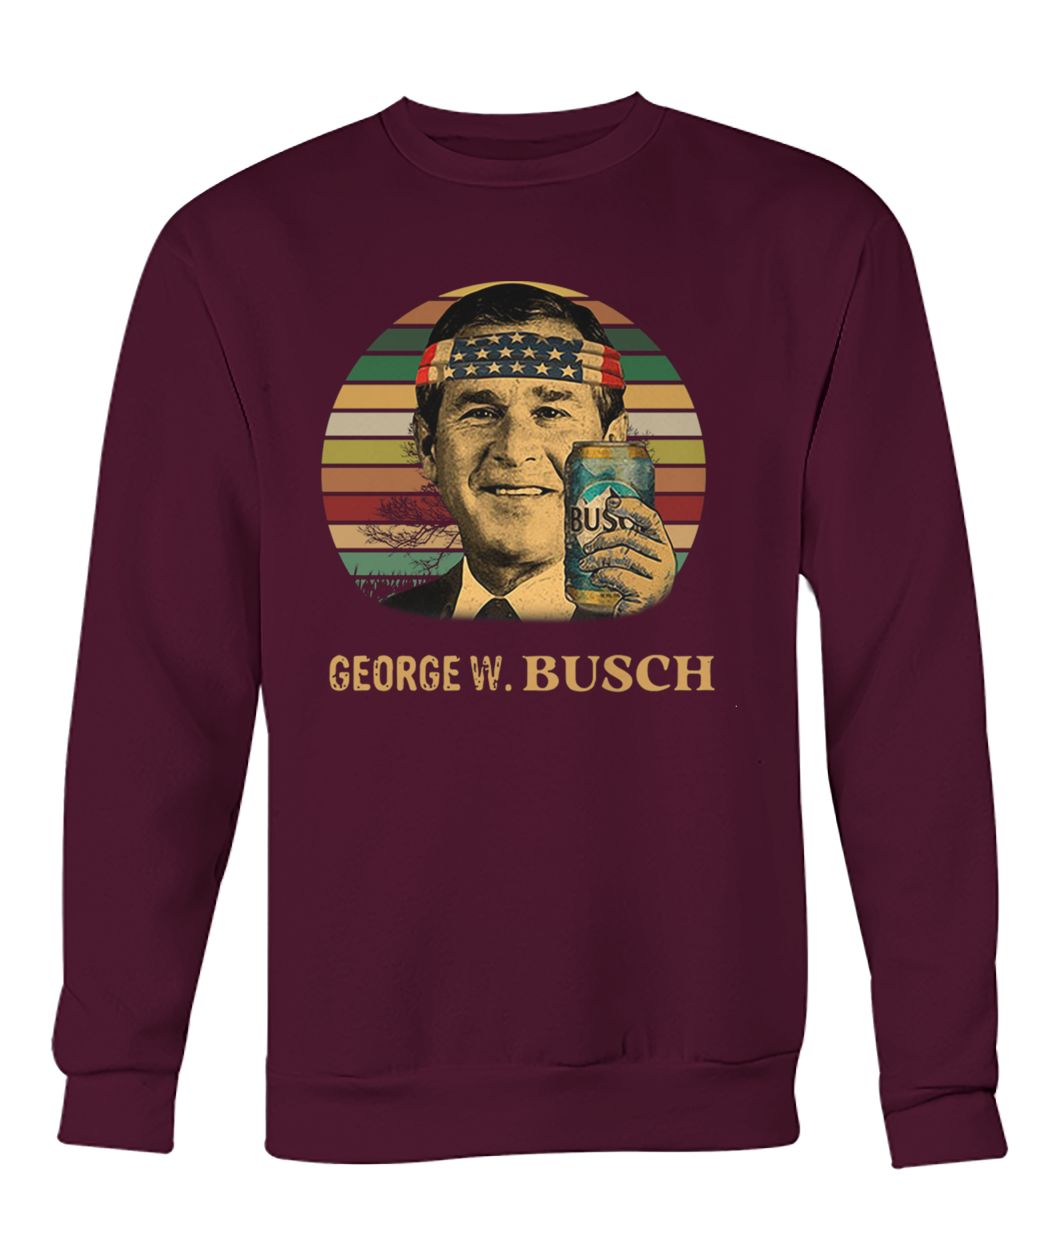 Vintage George W Busch light independence day crew neck sweatshirt